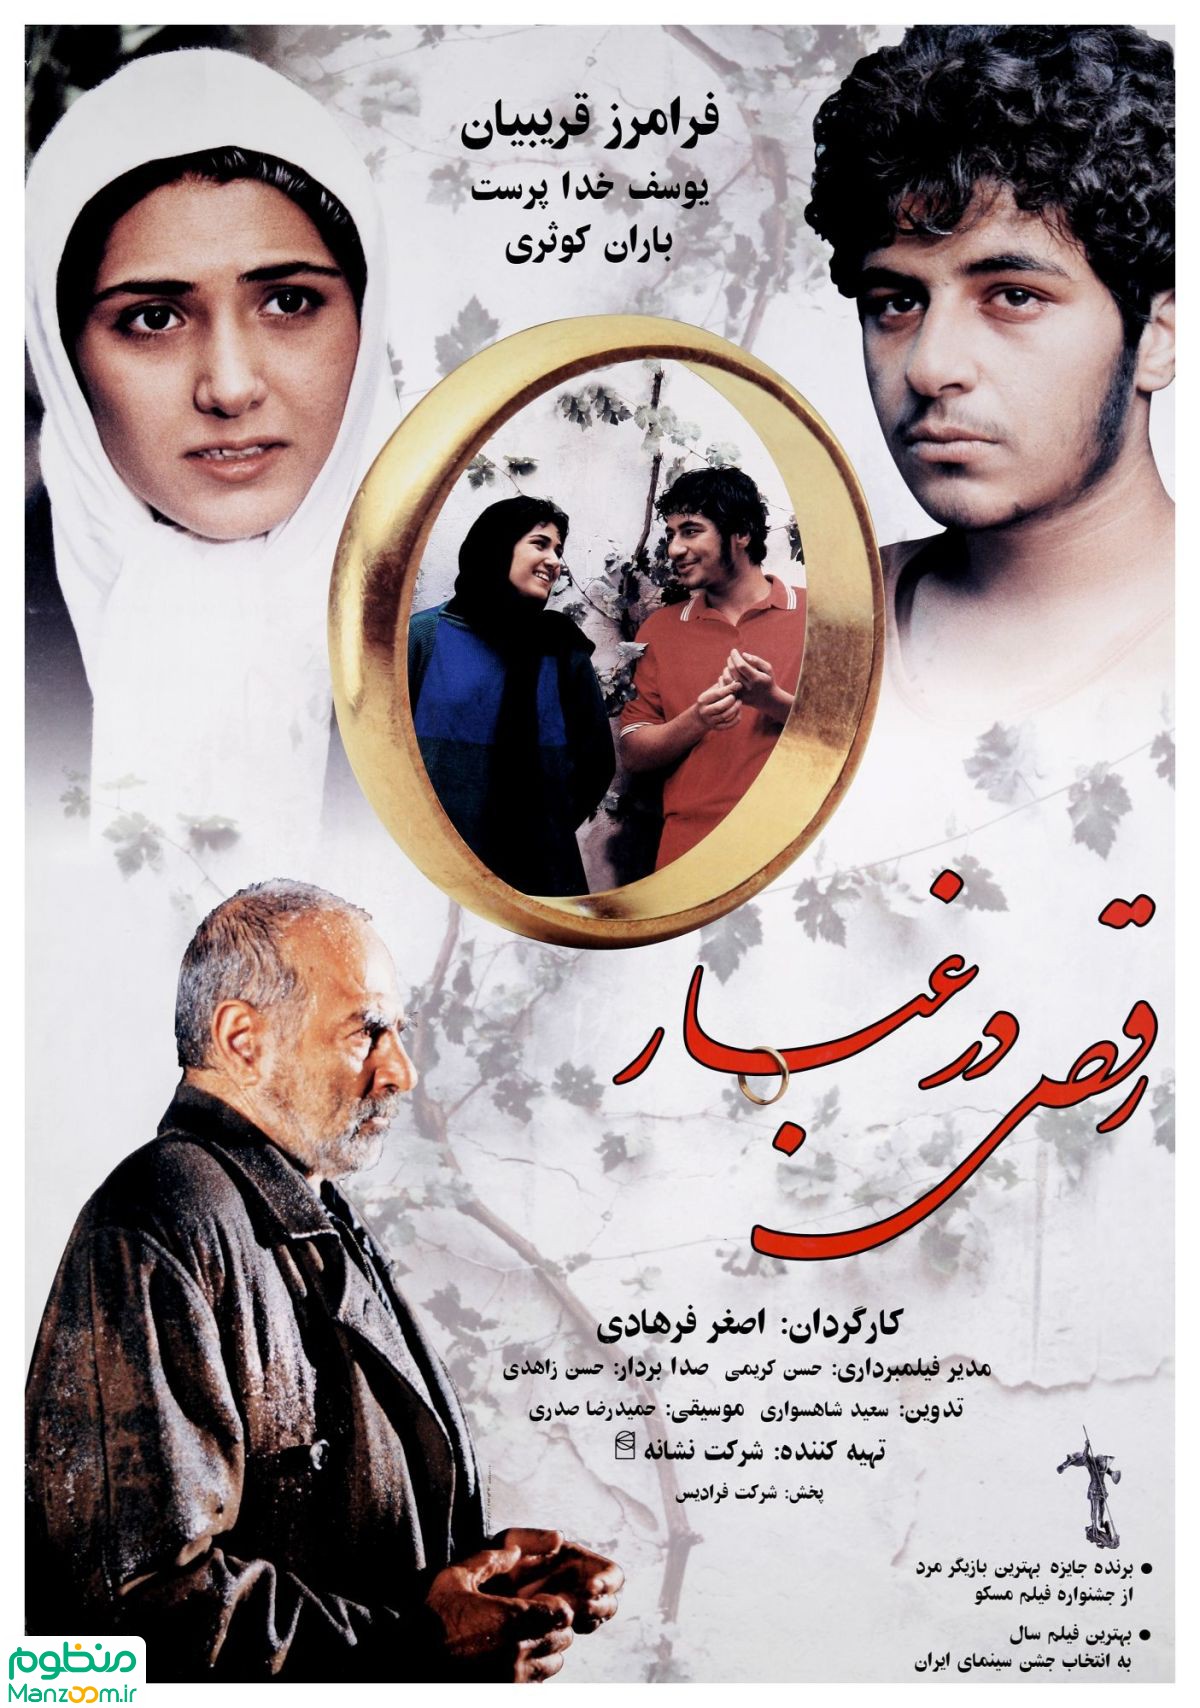  فیلم سینمایی رقص در غبار به کارگردانی اصغر فرهادی